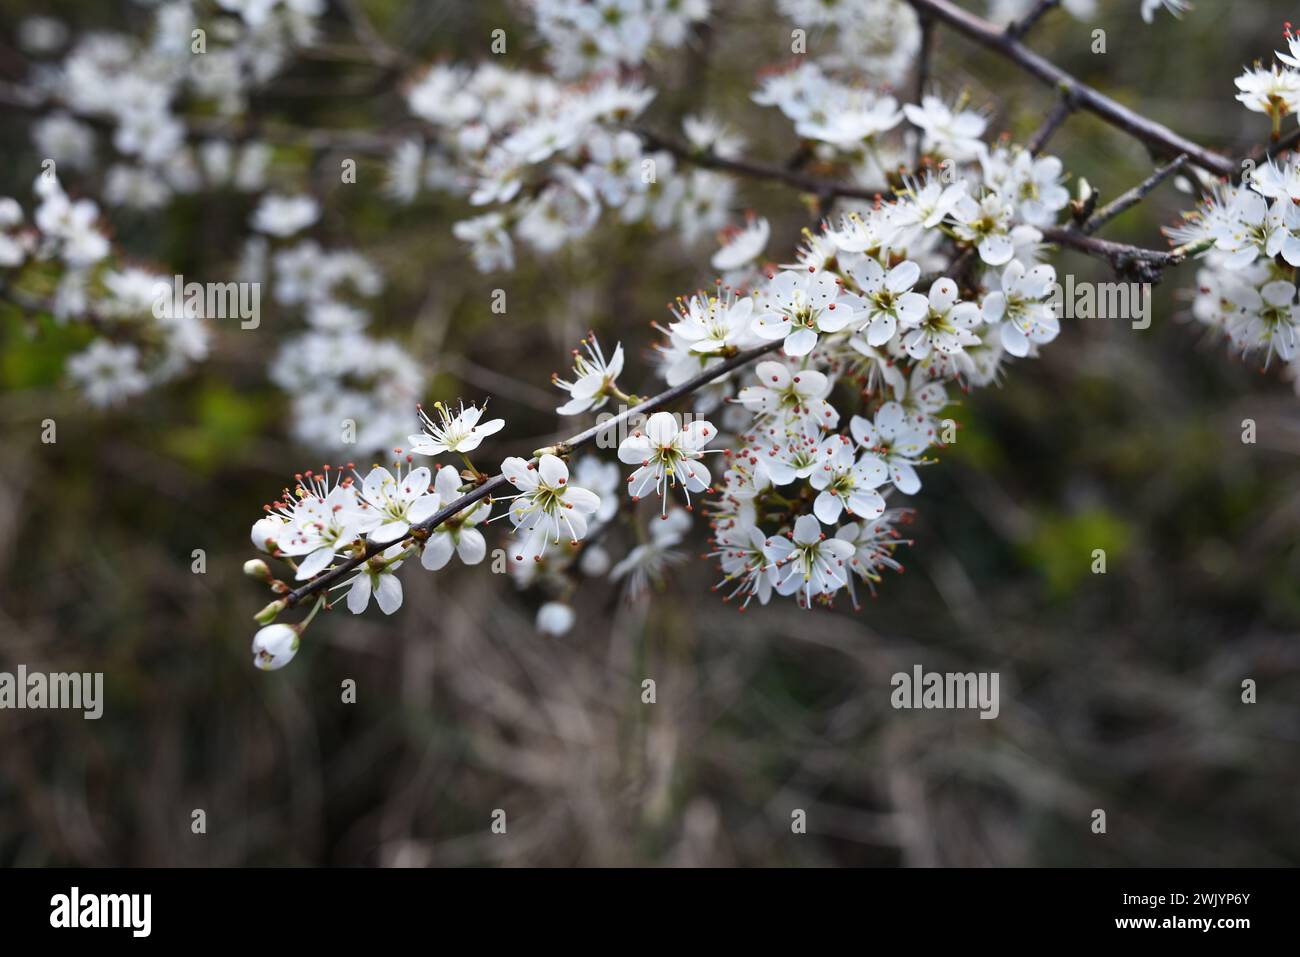 Schwarzdornbaum-Zweig mit den weißen Blüten im Frühjahr. Schöner floraler Hintergrund. Vorstellung von neuem Leben und Anfängen, Hoffnungskonzept. Stockfoto